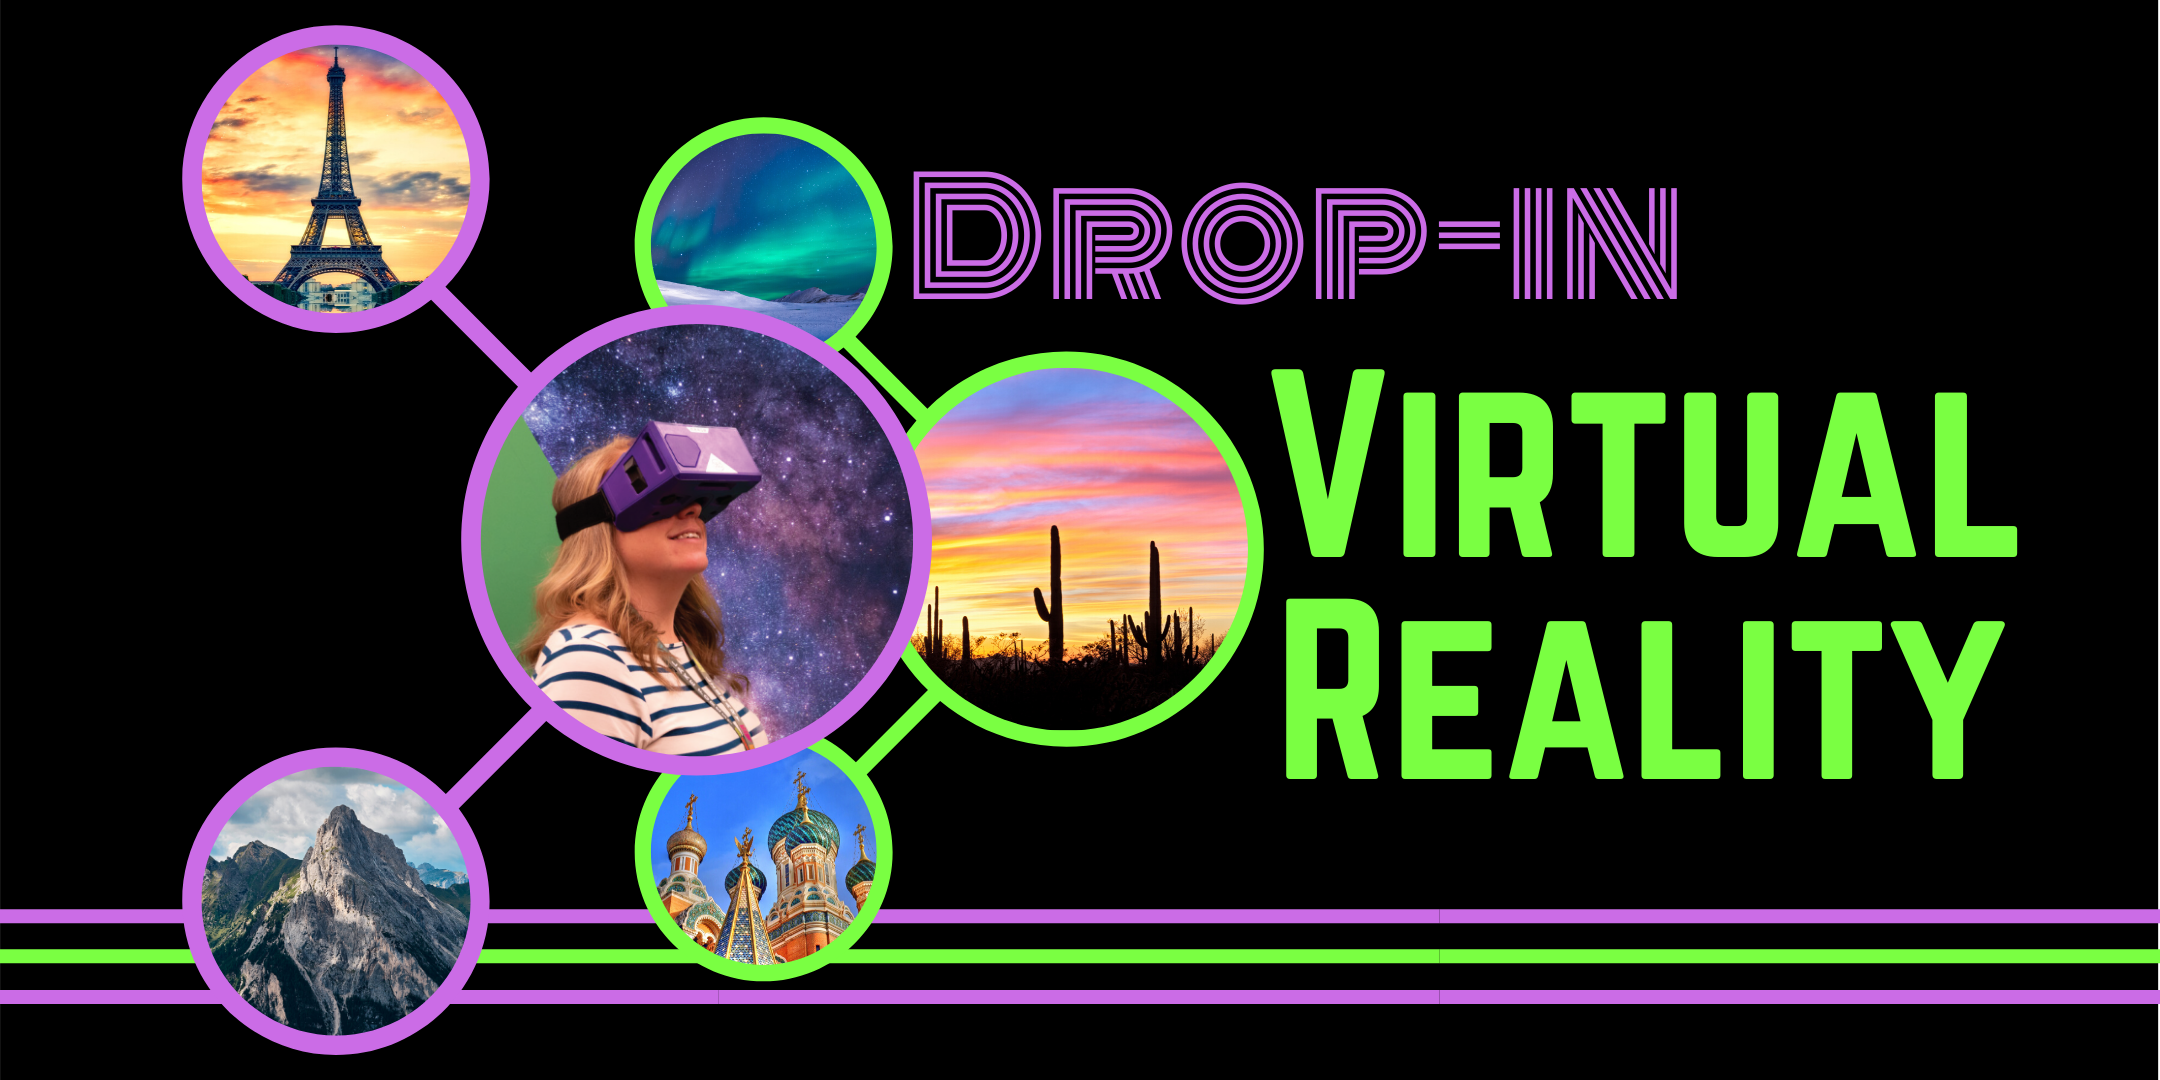 Drop-in Virtual Reality